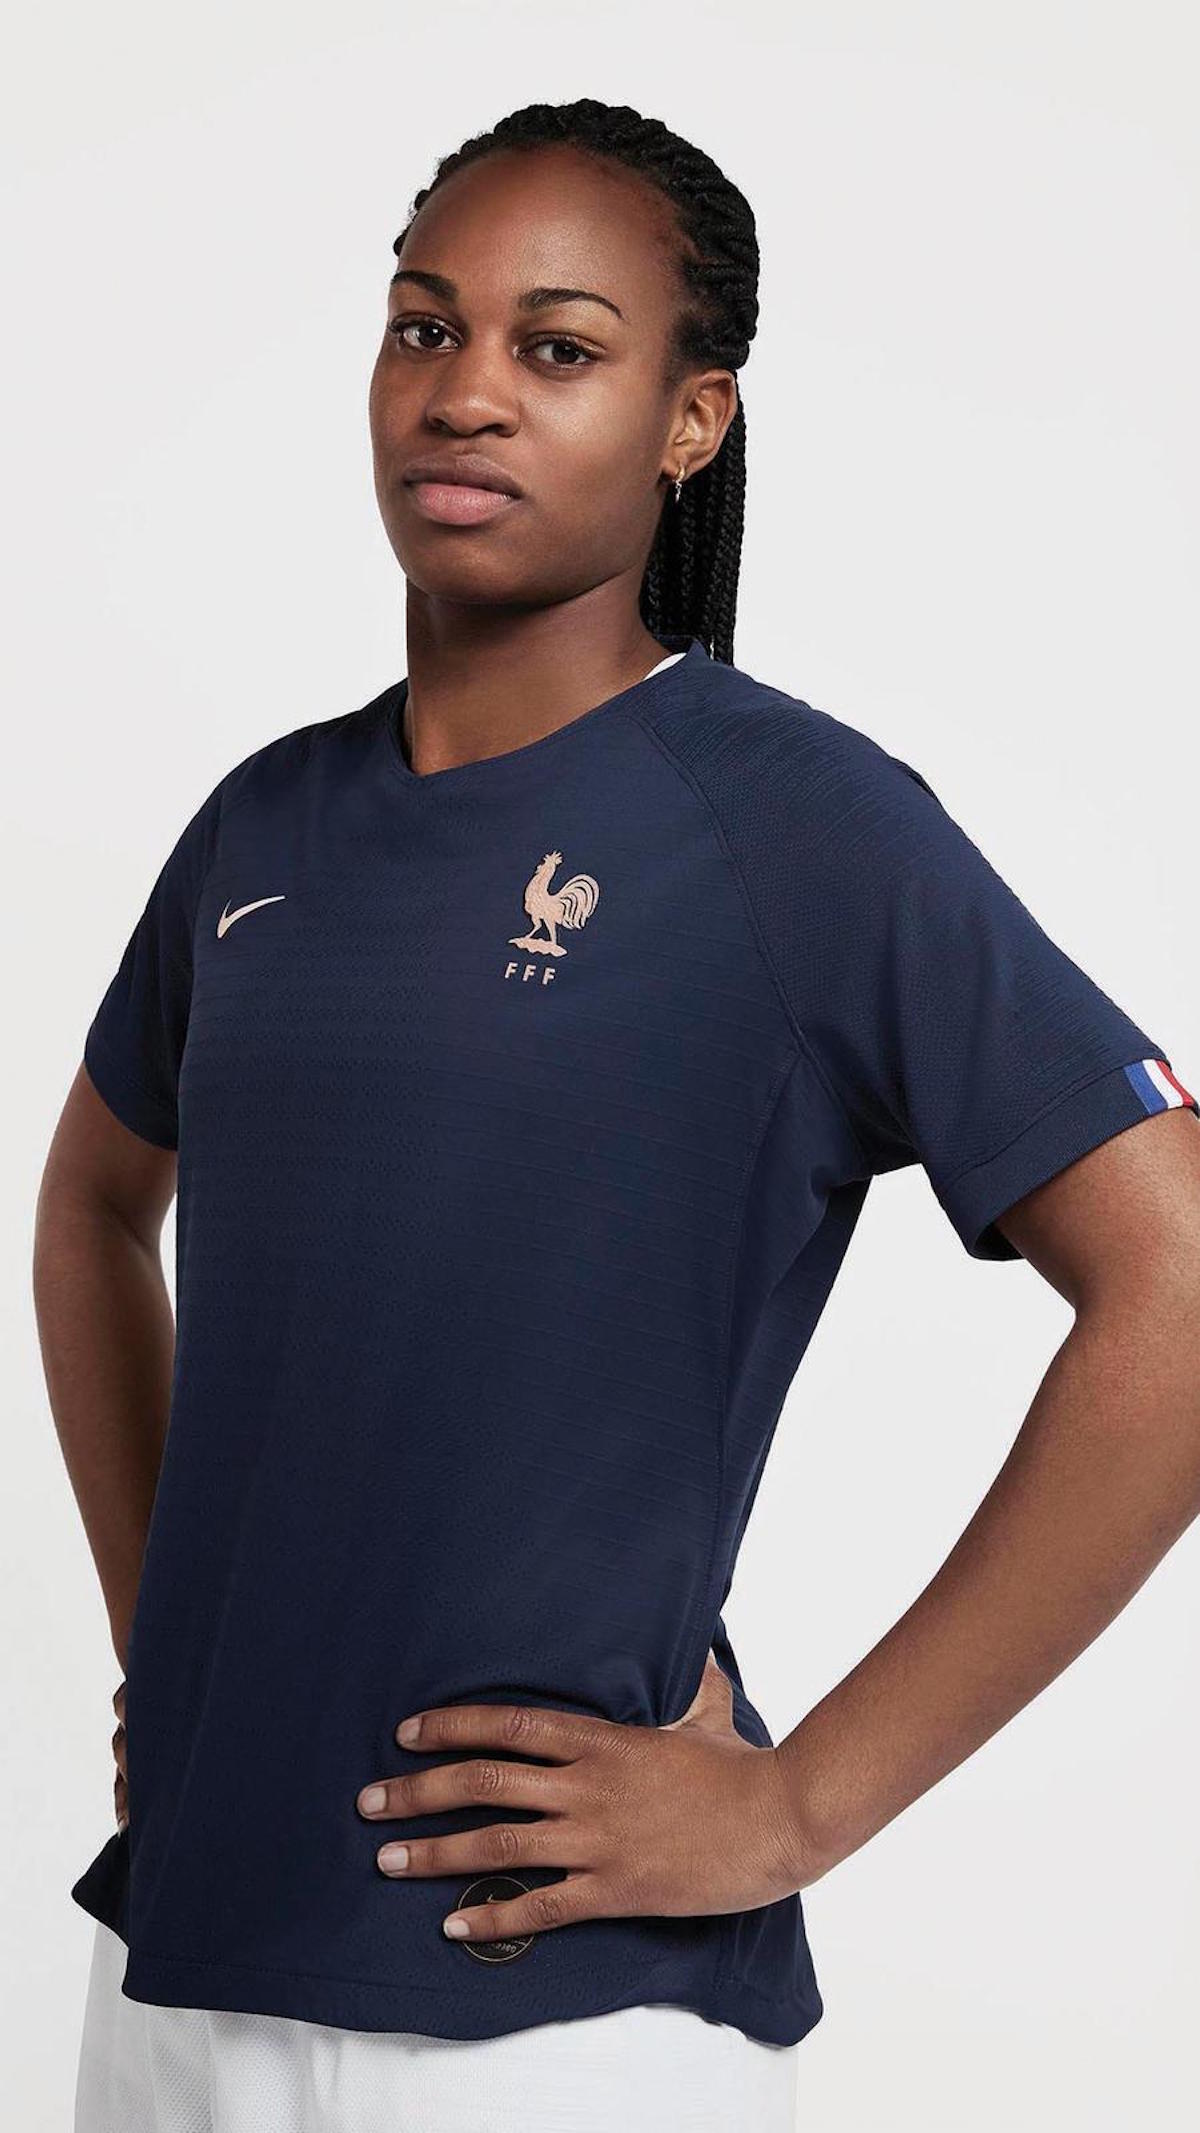 Nike dévoile le nouveau maillot de l'équipe de France féminine - WAVE®